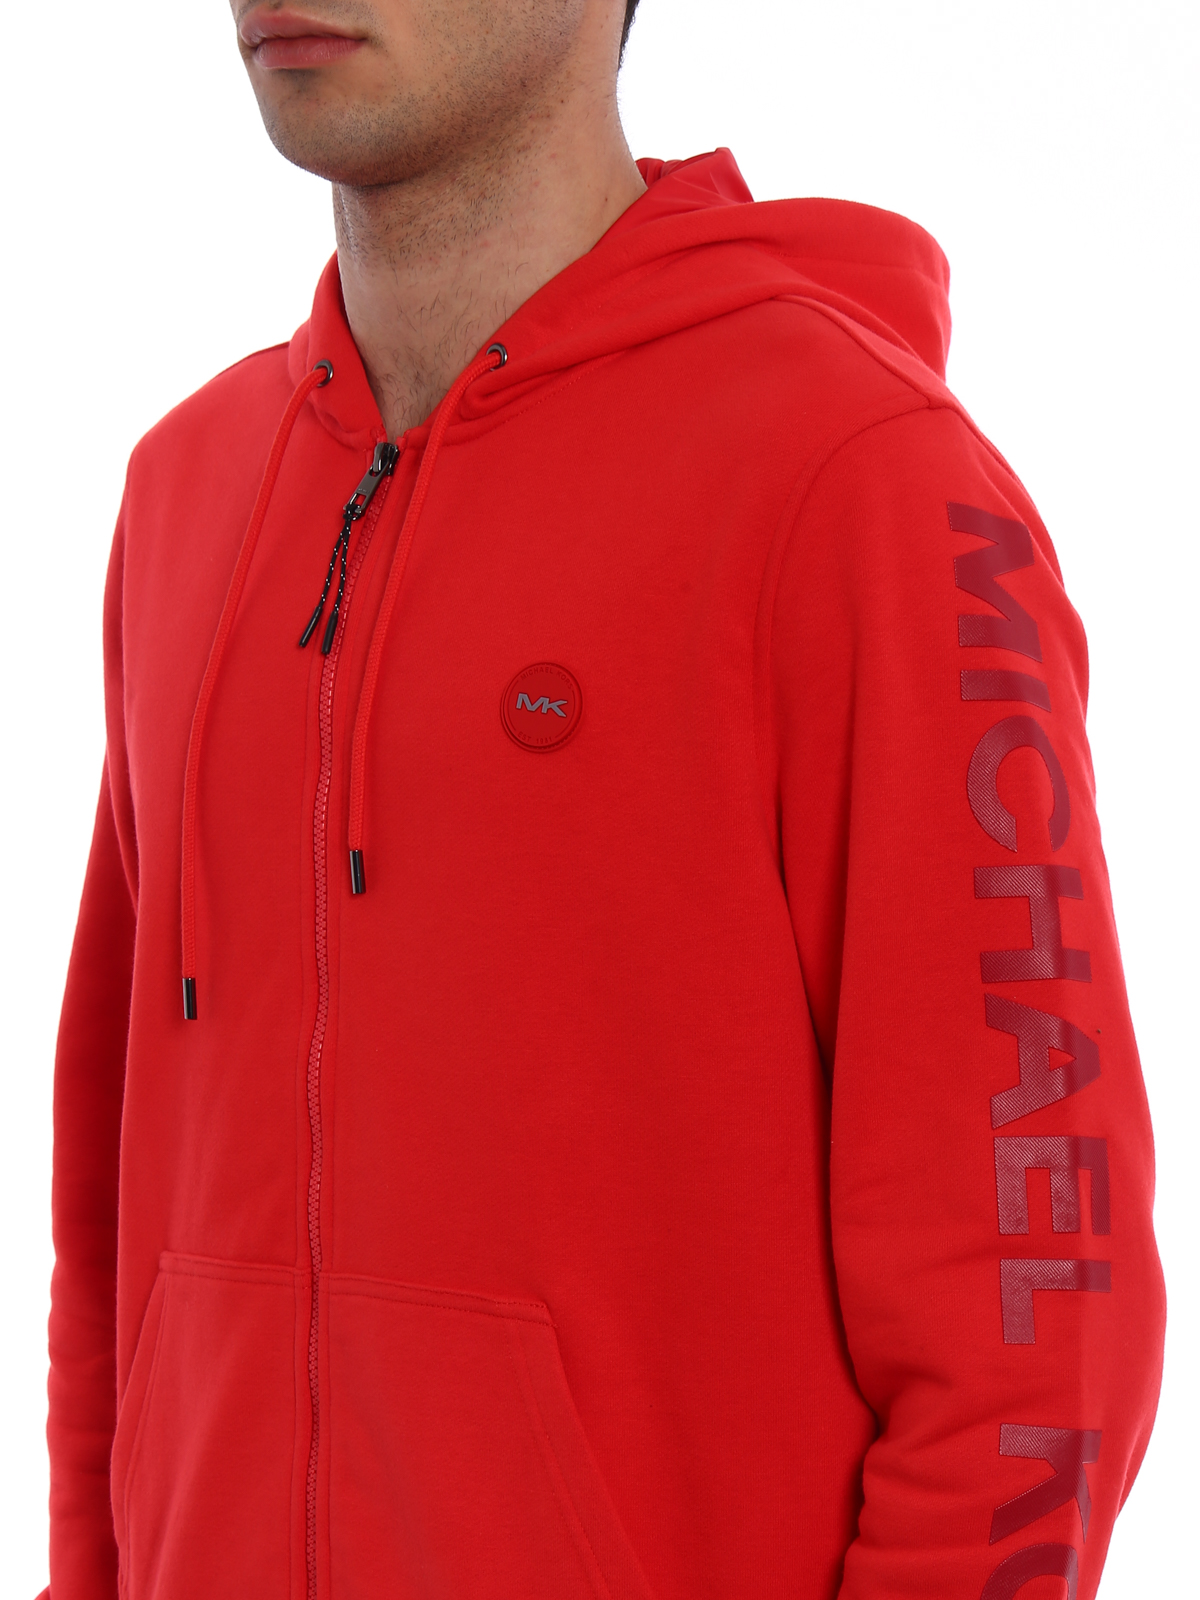 michael kors red hoodie